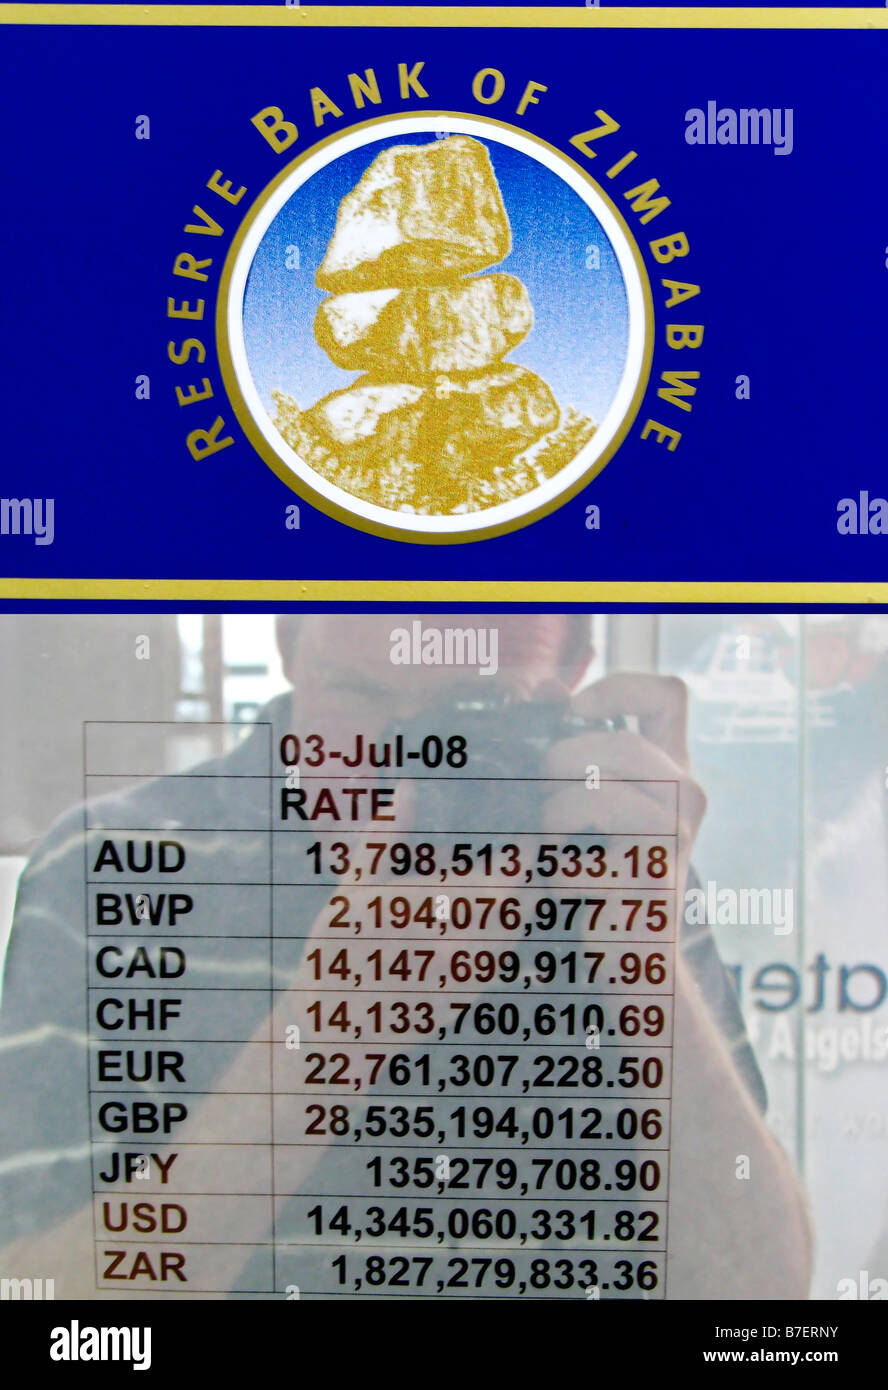 Avis de la banque de réserve du Zimbabwe dans la fenêtre d'une banque  montrant le taux de change officiel Photo Stock - Alamy